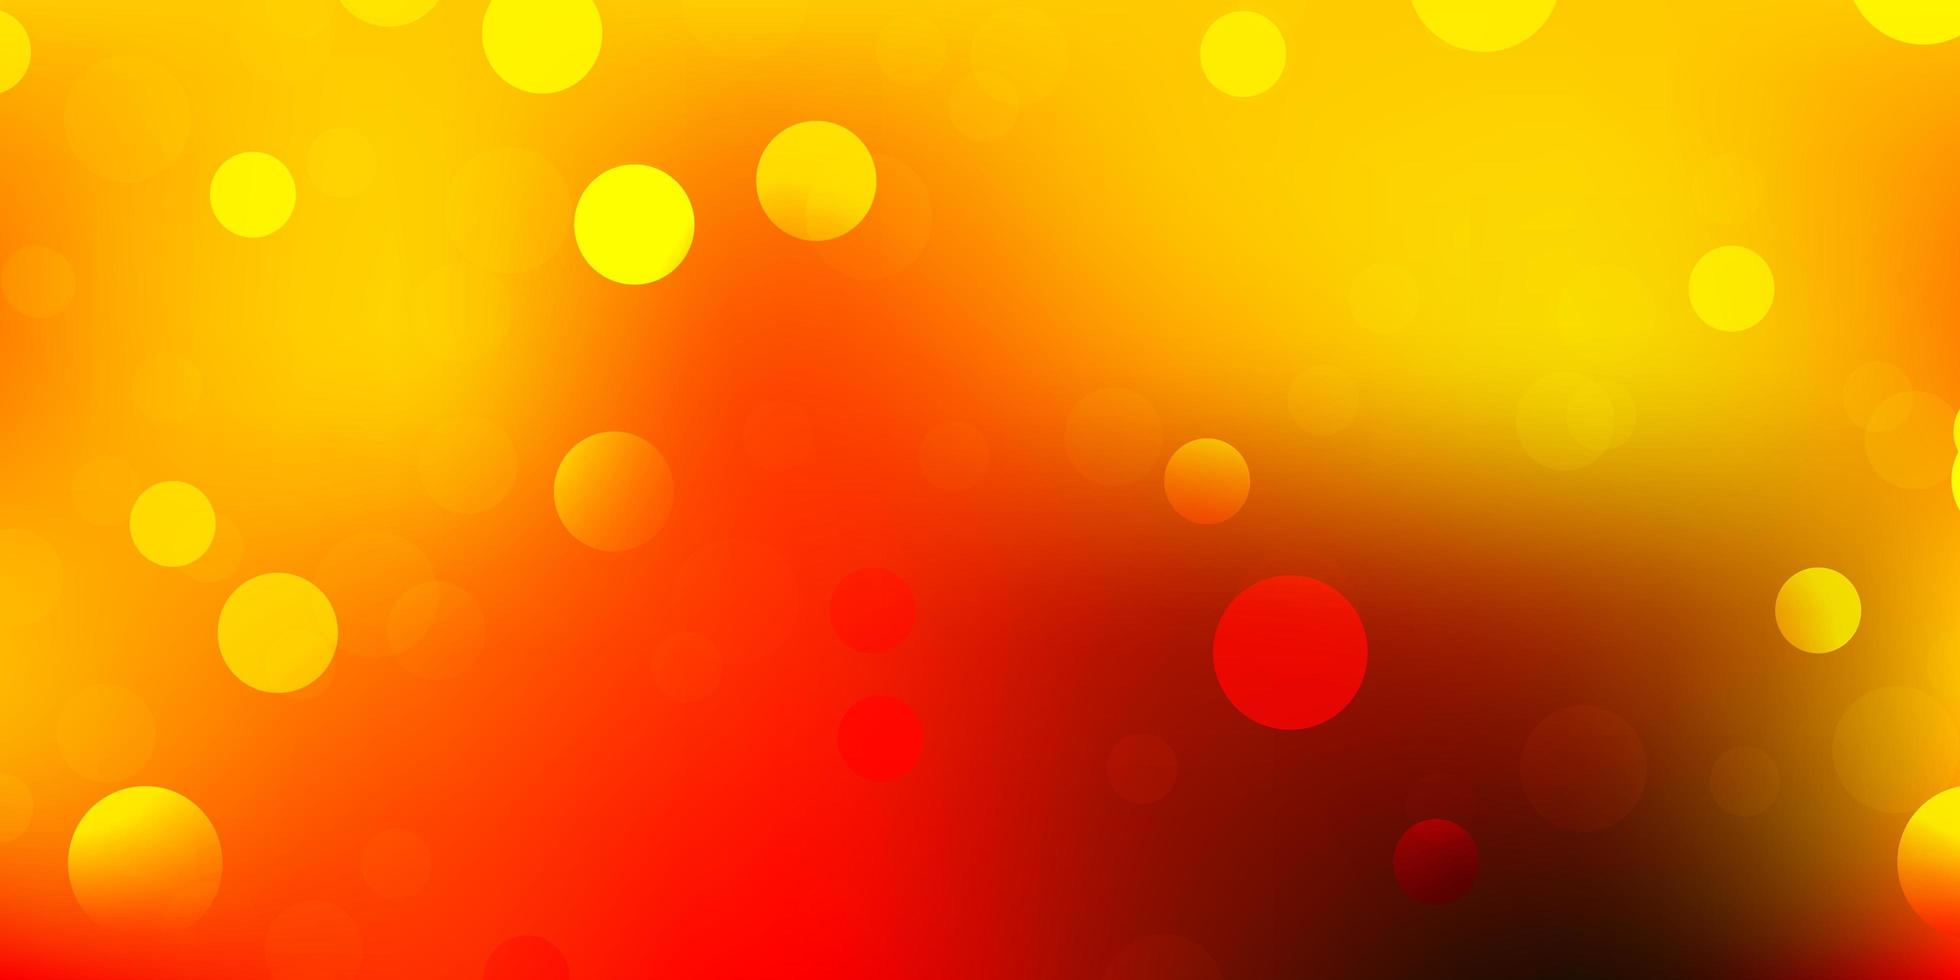 ljusröd, gul vektorbakgrund med slumpmässiga former. vektor